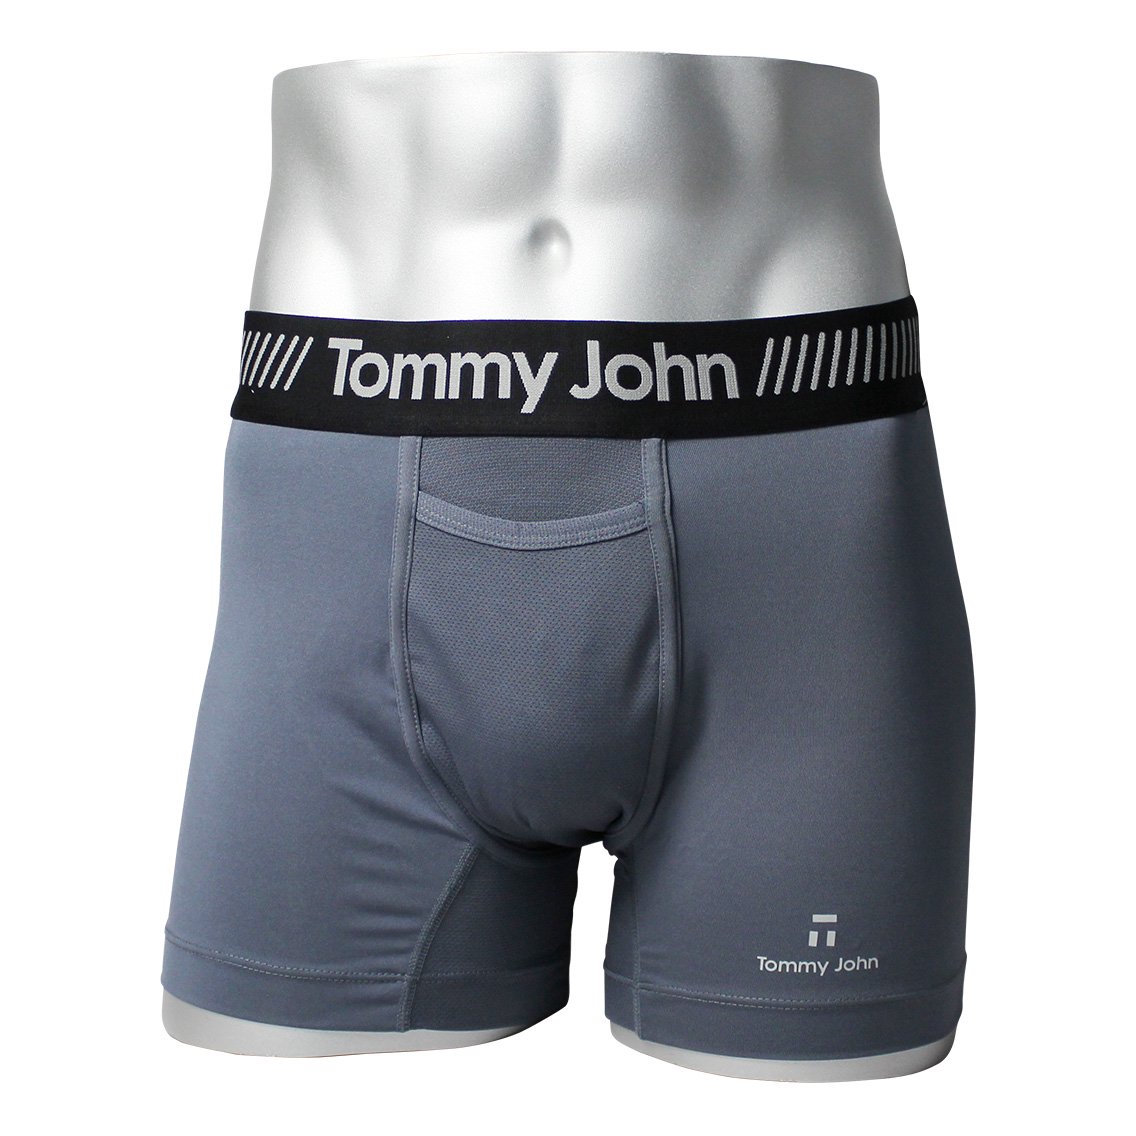 [MVBZZ04PO1-GREY] TOMMY JOHN トミージョン ボクサーパンツ メンズ アンダーウェア インナー 男性 下着 ブランド おすすめ 人気 プレゼ